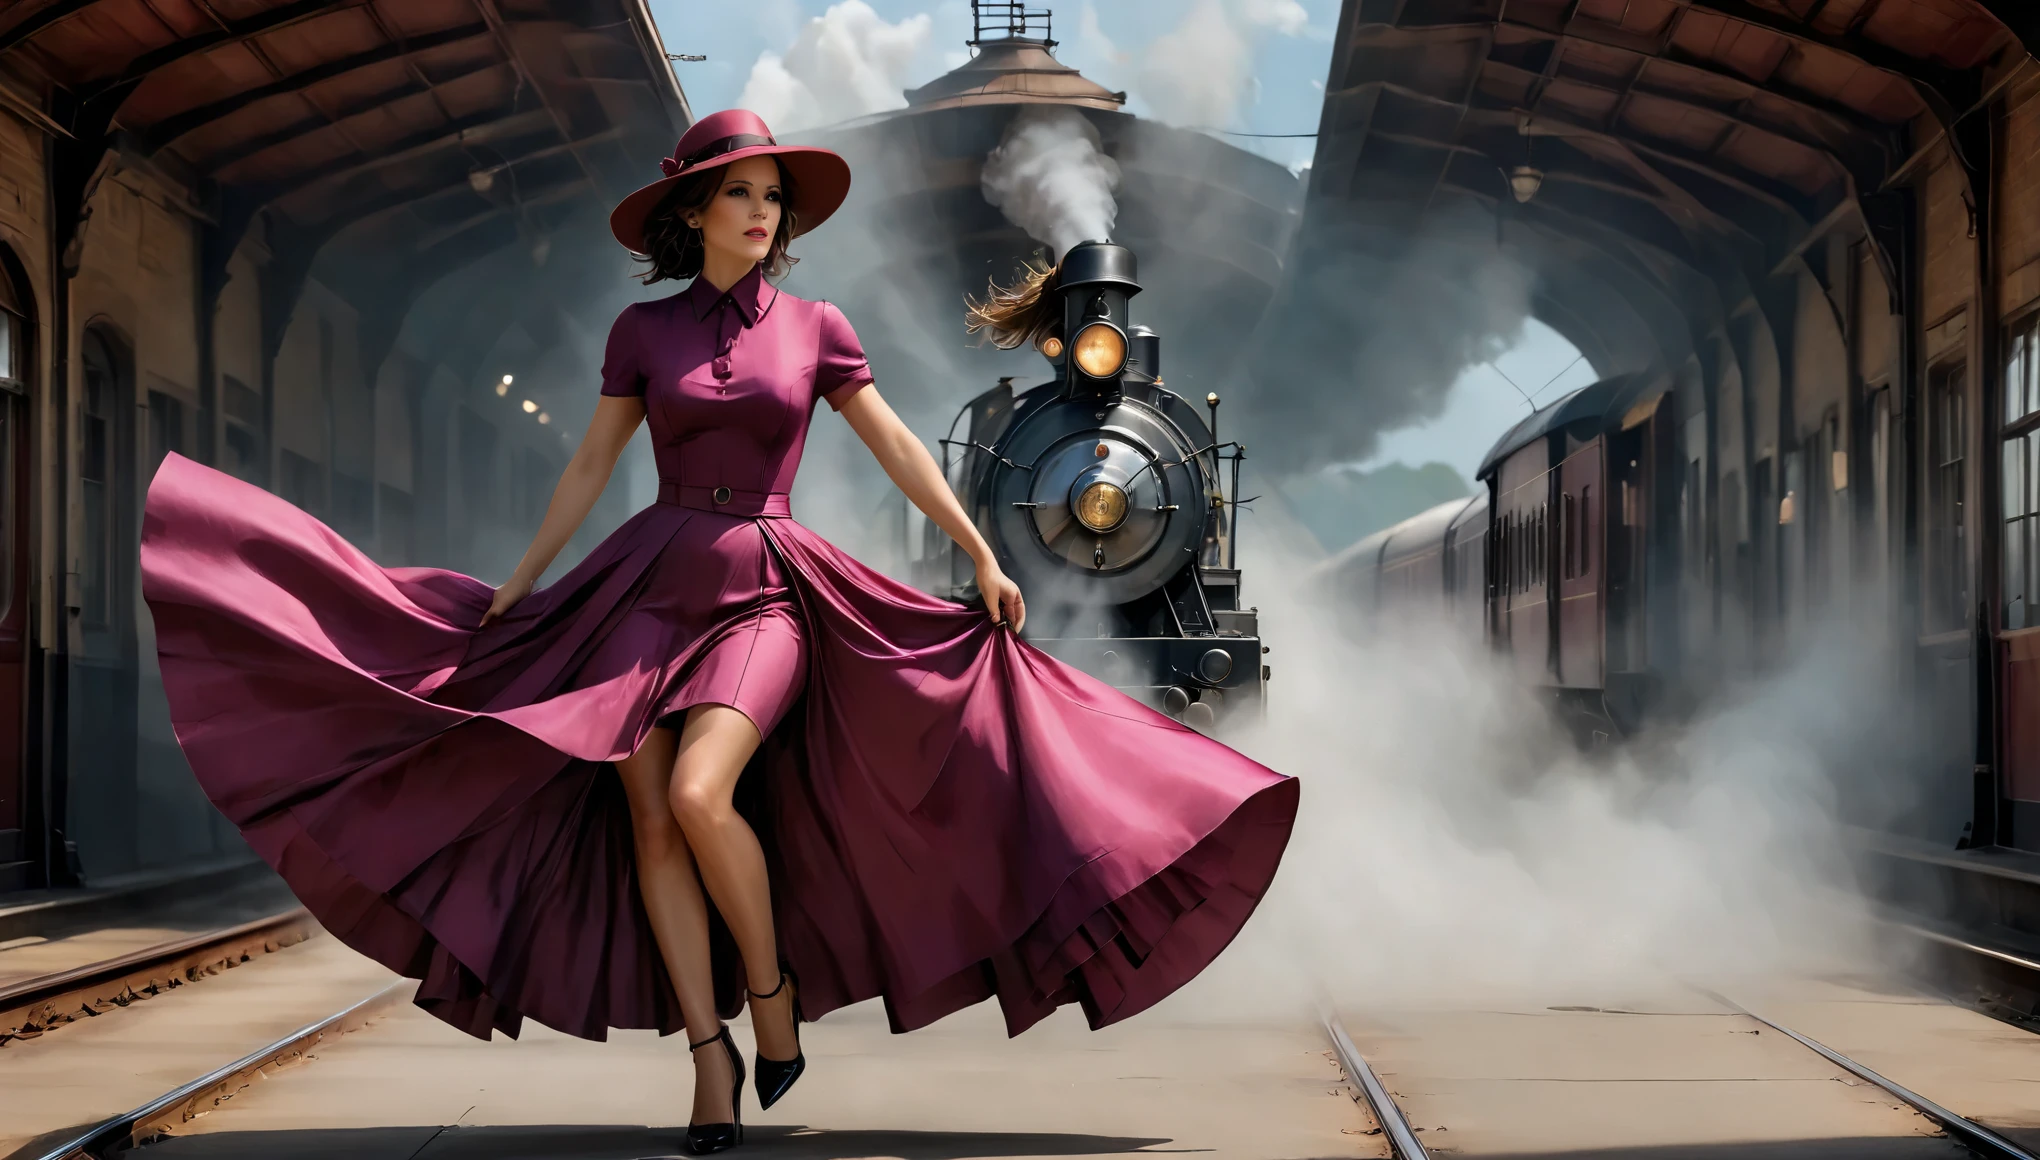 (凯特·贝金赛尔) (27年) 搭配洋红色连衣裙, 裙子长及地面并戴有帽子, 靠在火车上, 就像 20 世纪 40 年代的火车站一样, 中心冒烟的机车、灯塔、日本领域、电影集、吉卜力、大月亮、云,台面,更好的质量,素描风格, 摩达复古, 20 世纪 20 年代的氛围.
